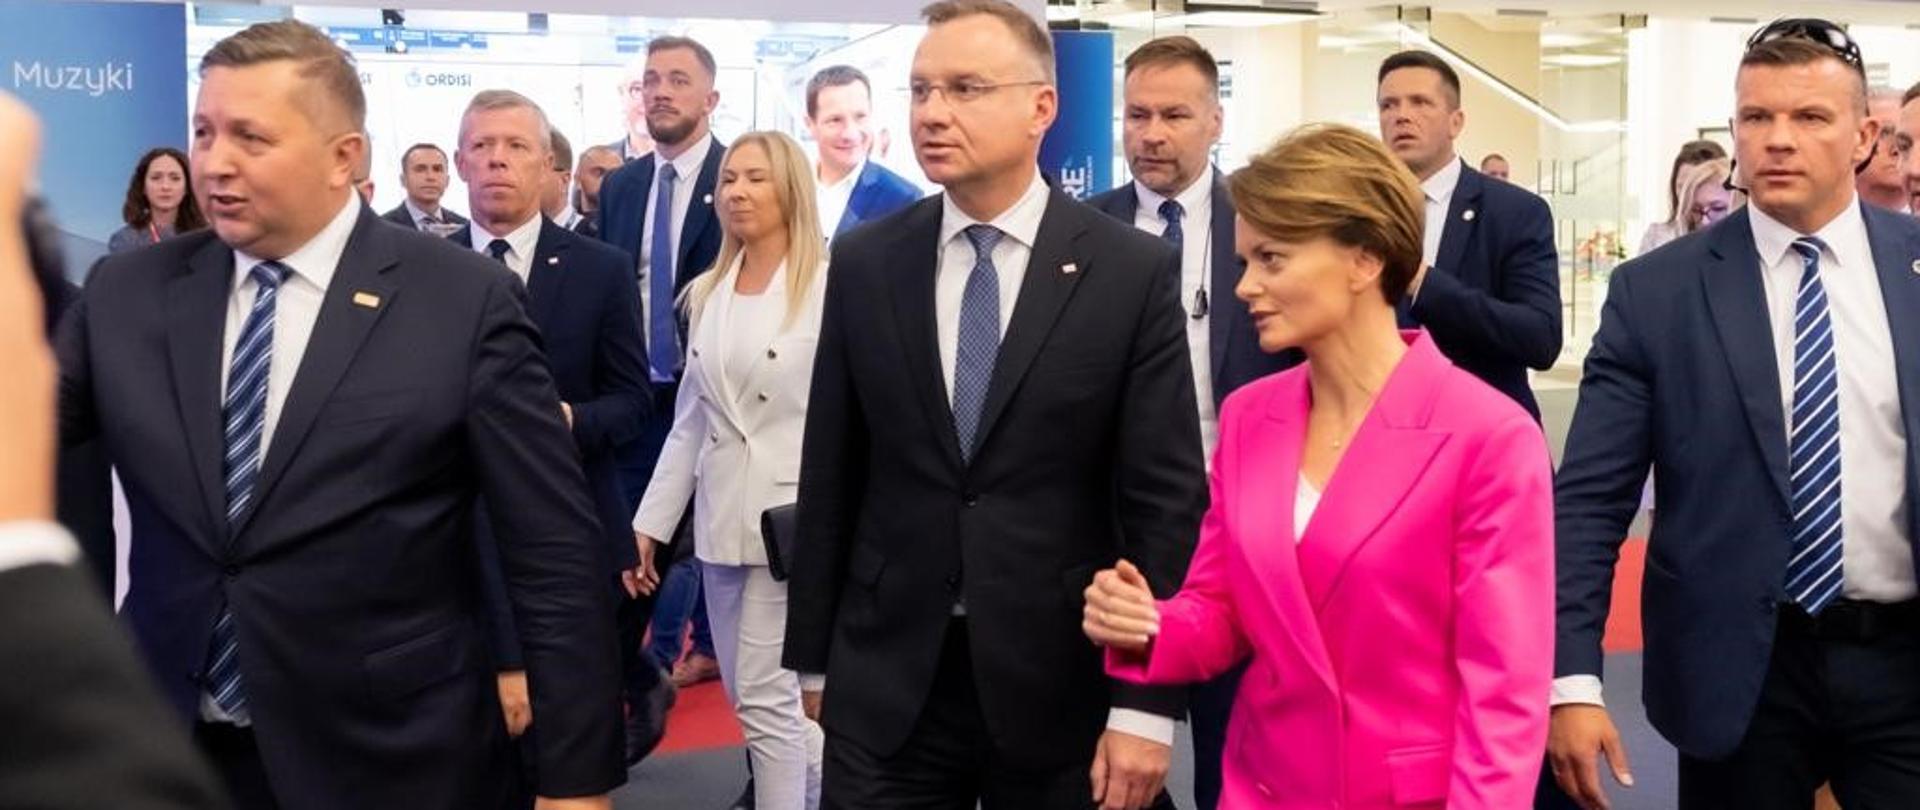 Wiceminister Jadwiga Emilewicz idzie obok prezydenta RP Andrzeja Dudy w tłumie osób. 